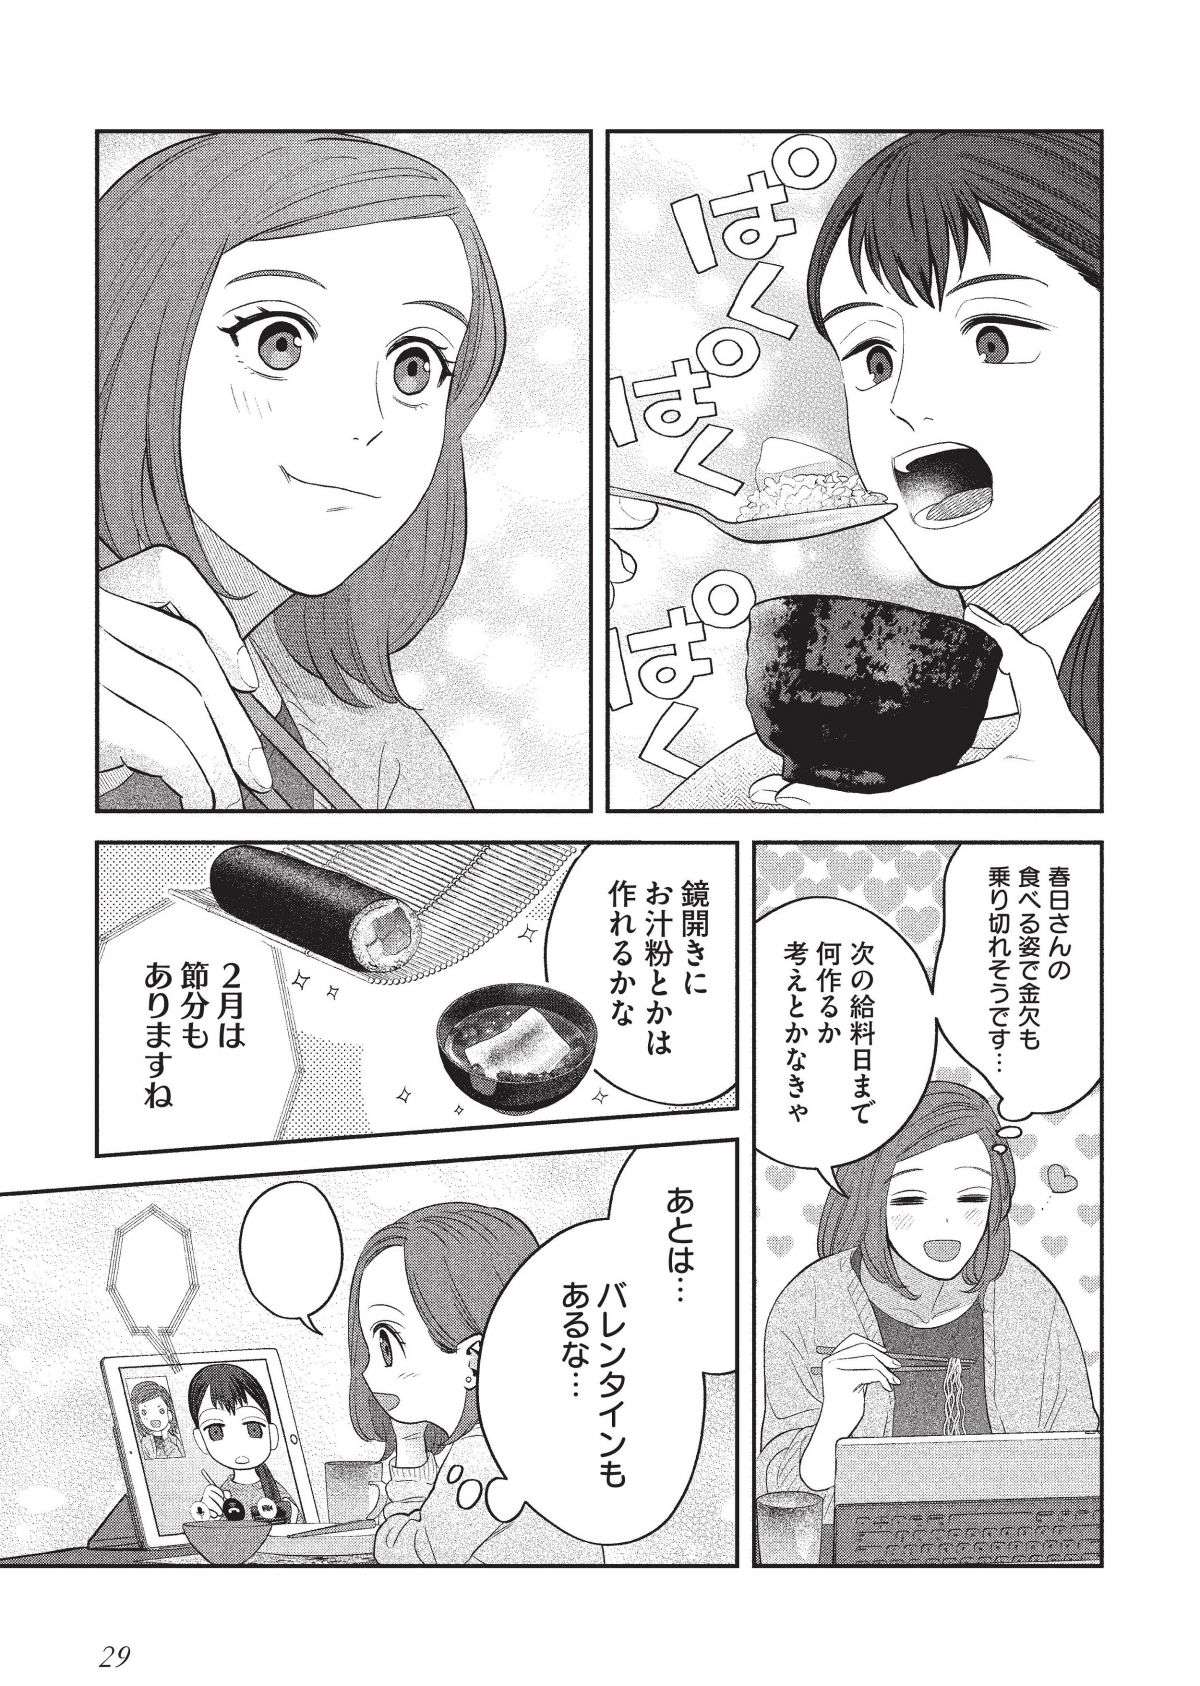 1食28円の焼きそばや豆腐で節約する女子。金欠を乗り切れそう...？／作りたい女と食べたい女3 tsukutabe33-8.jpg